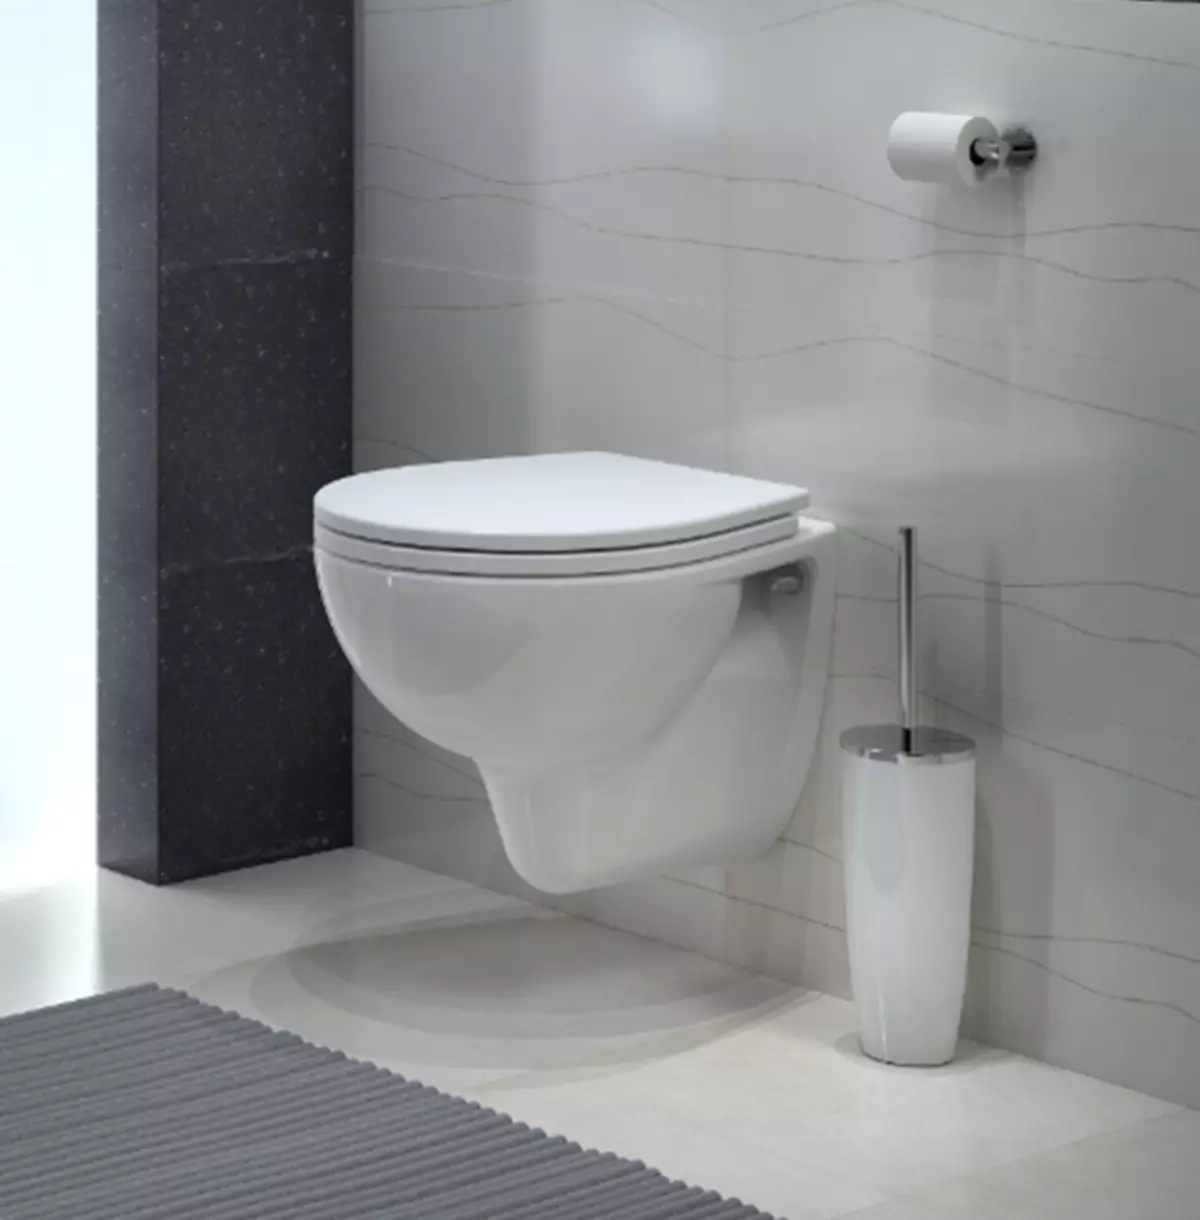 Toalety Kolo: opis zawieszonych i podłóg toalet, styl i solo, Nova Pro Rimfree i Runa, Idol i inne modele 10529_14